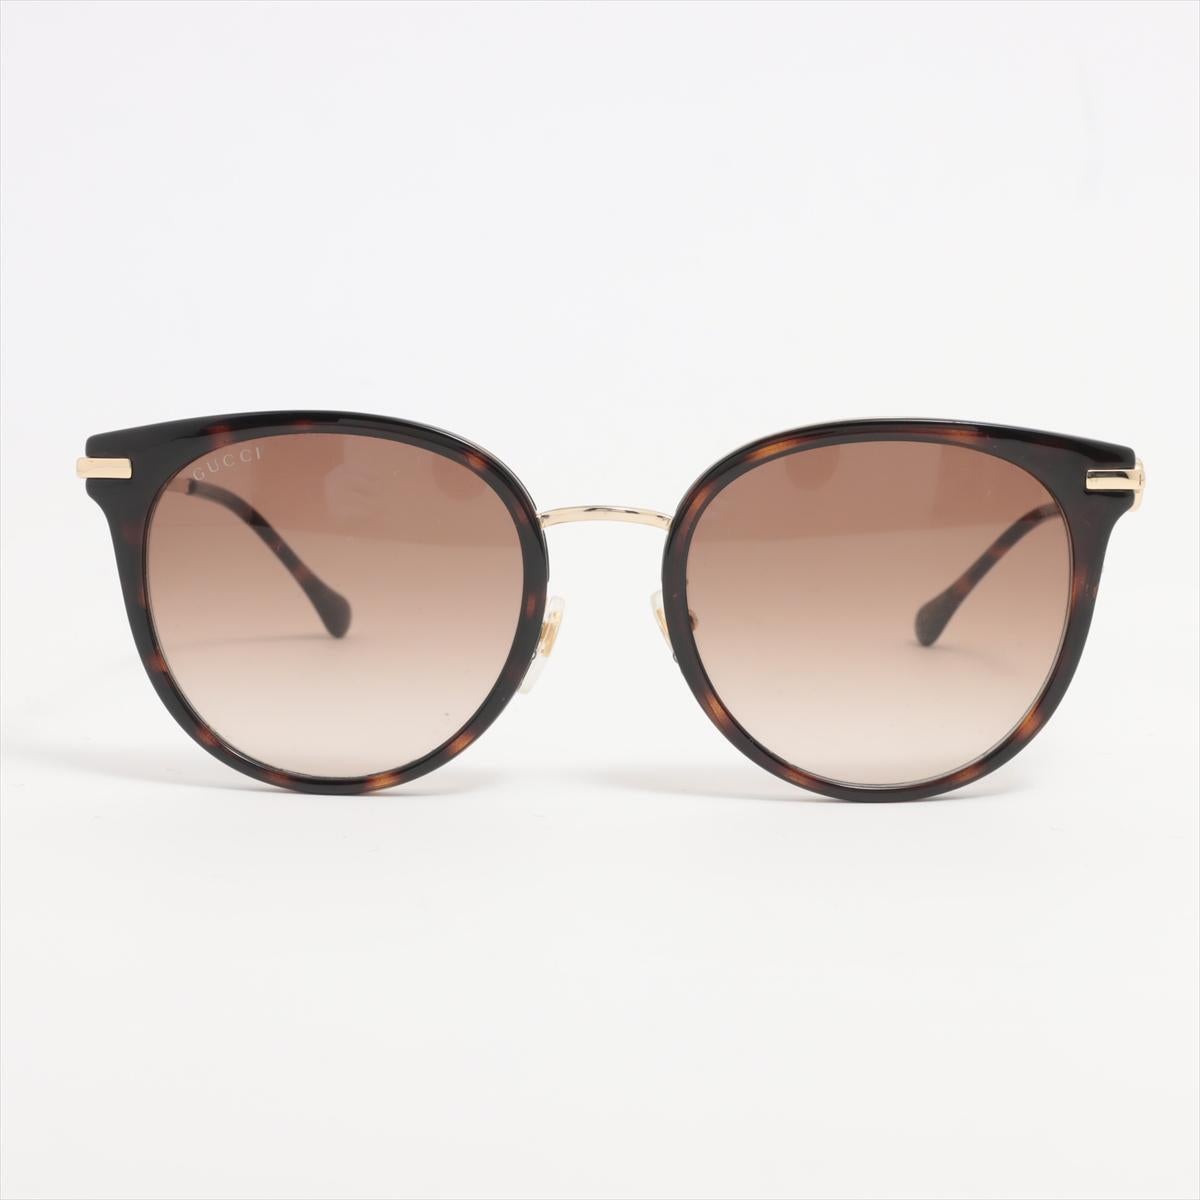 Les lunettes de soleil Gucci Cat Eye Horsebit Brown sont un accessoire élégant et sophistiqué qui respire le luxe et le glamour. Dotées d'une silhouette classique en œil de chat, ces lunettes de soleil sont ornées de l'emblématique mors Gucci sur